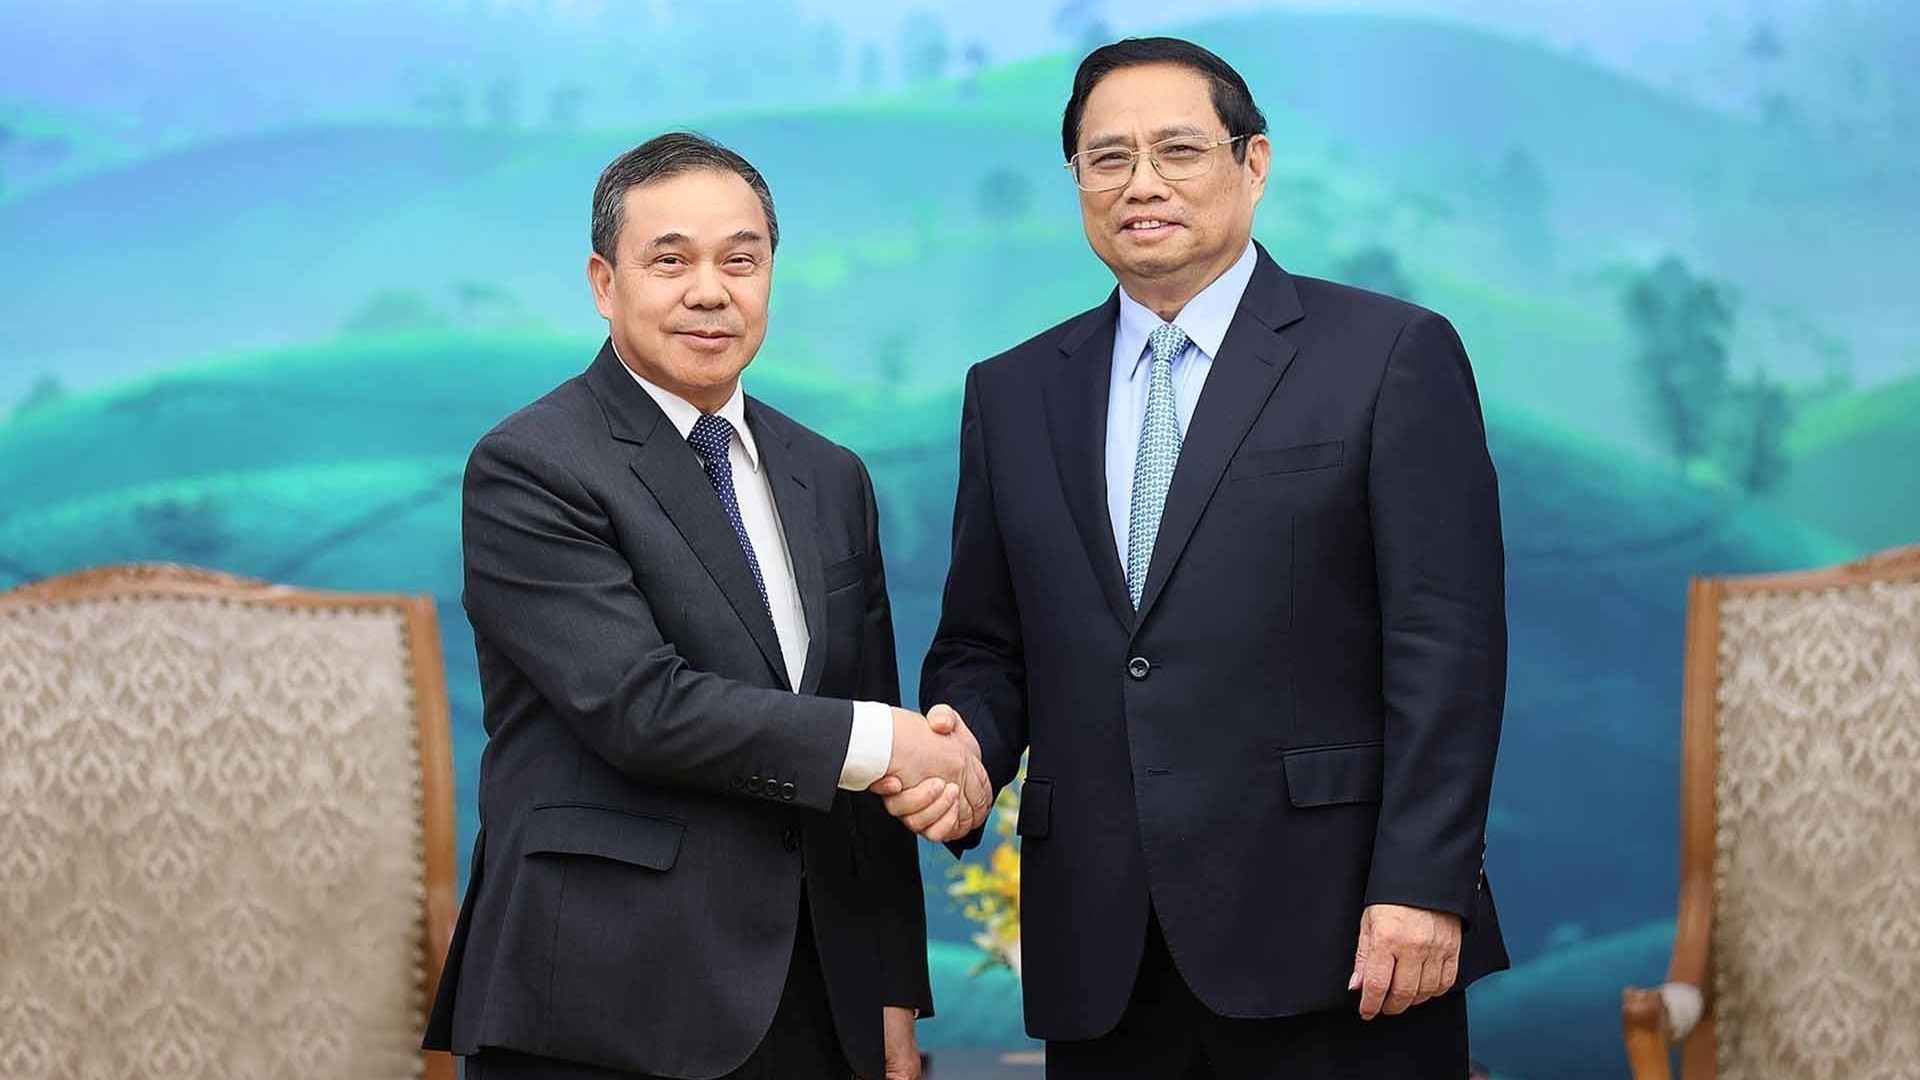 Thủ tướng Phạm Minh Chính tiếp Đại sứ Lào chào từ biệt kết thúc nhiệm kỳ công tác tại Việt Nam